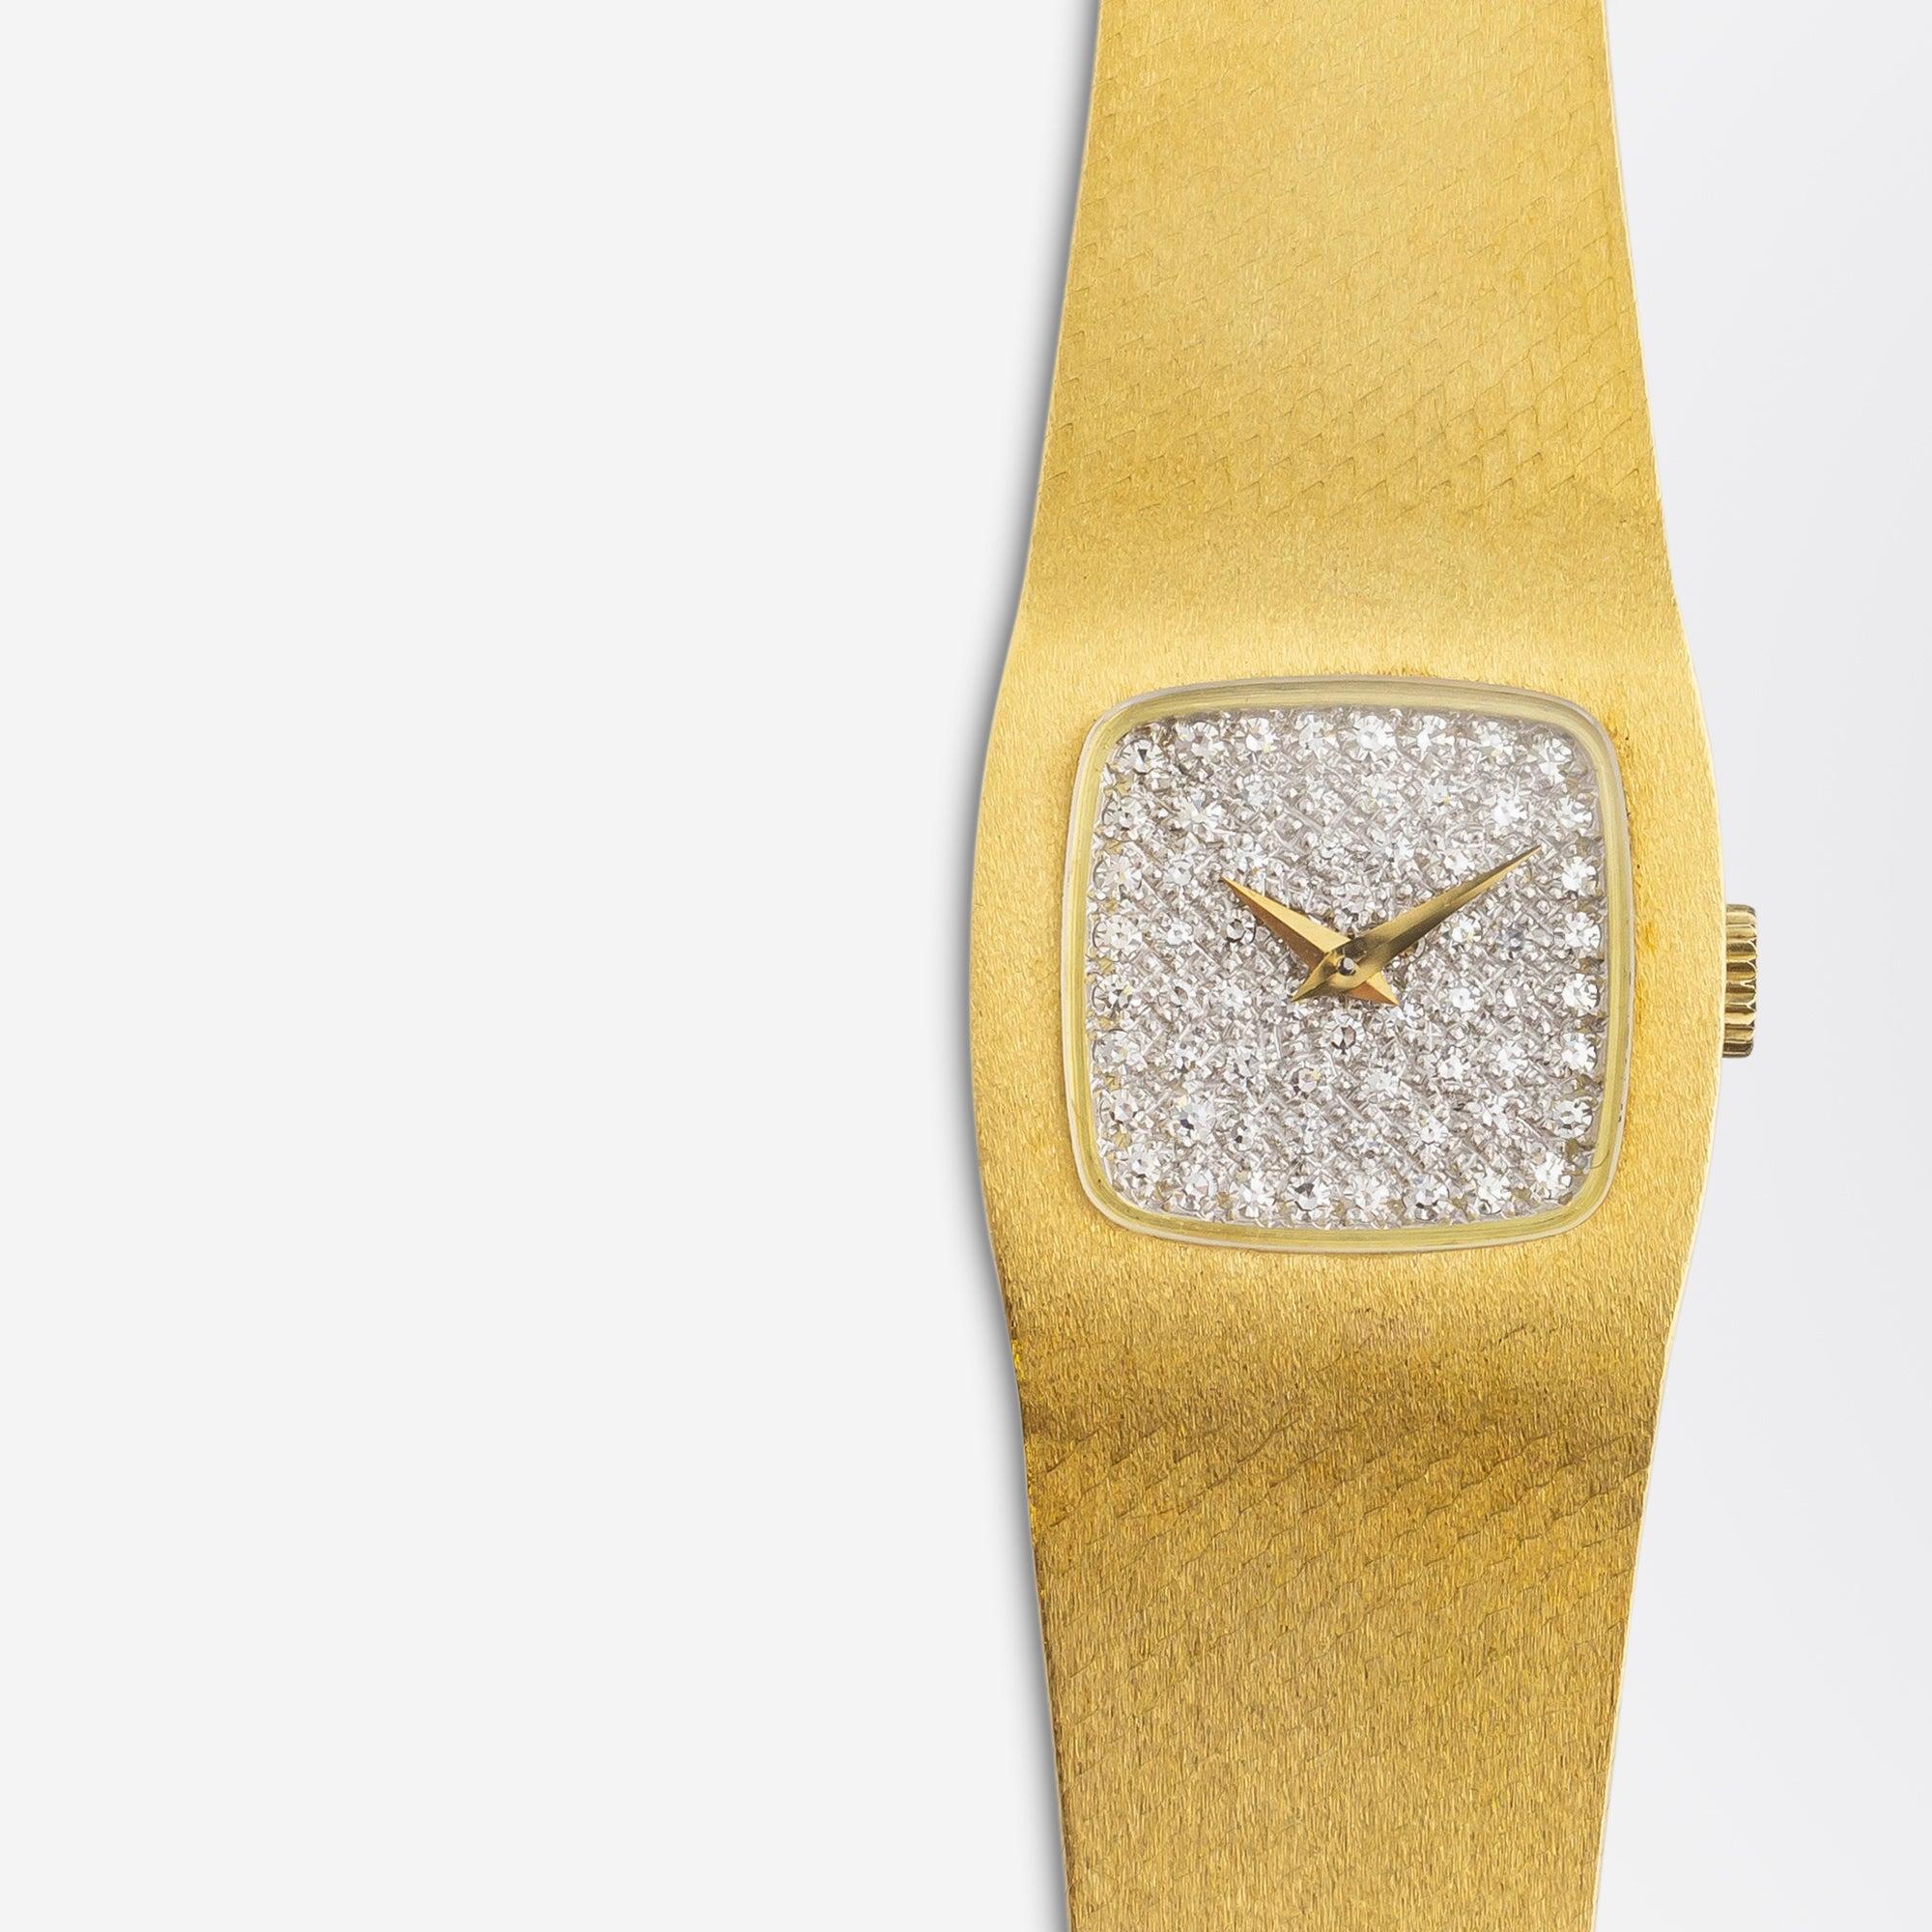 18k gold baume mercier watches